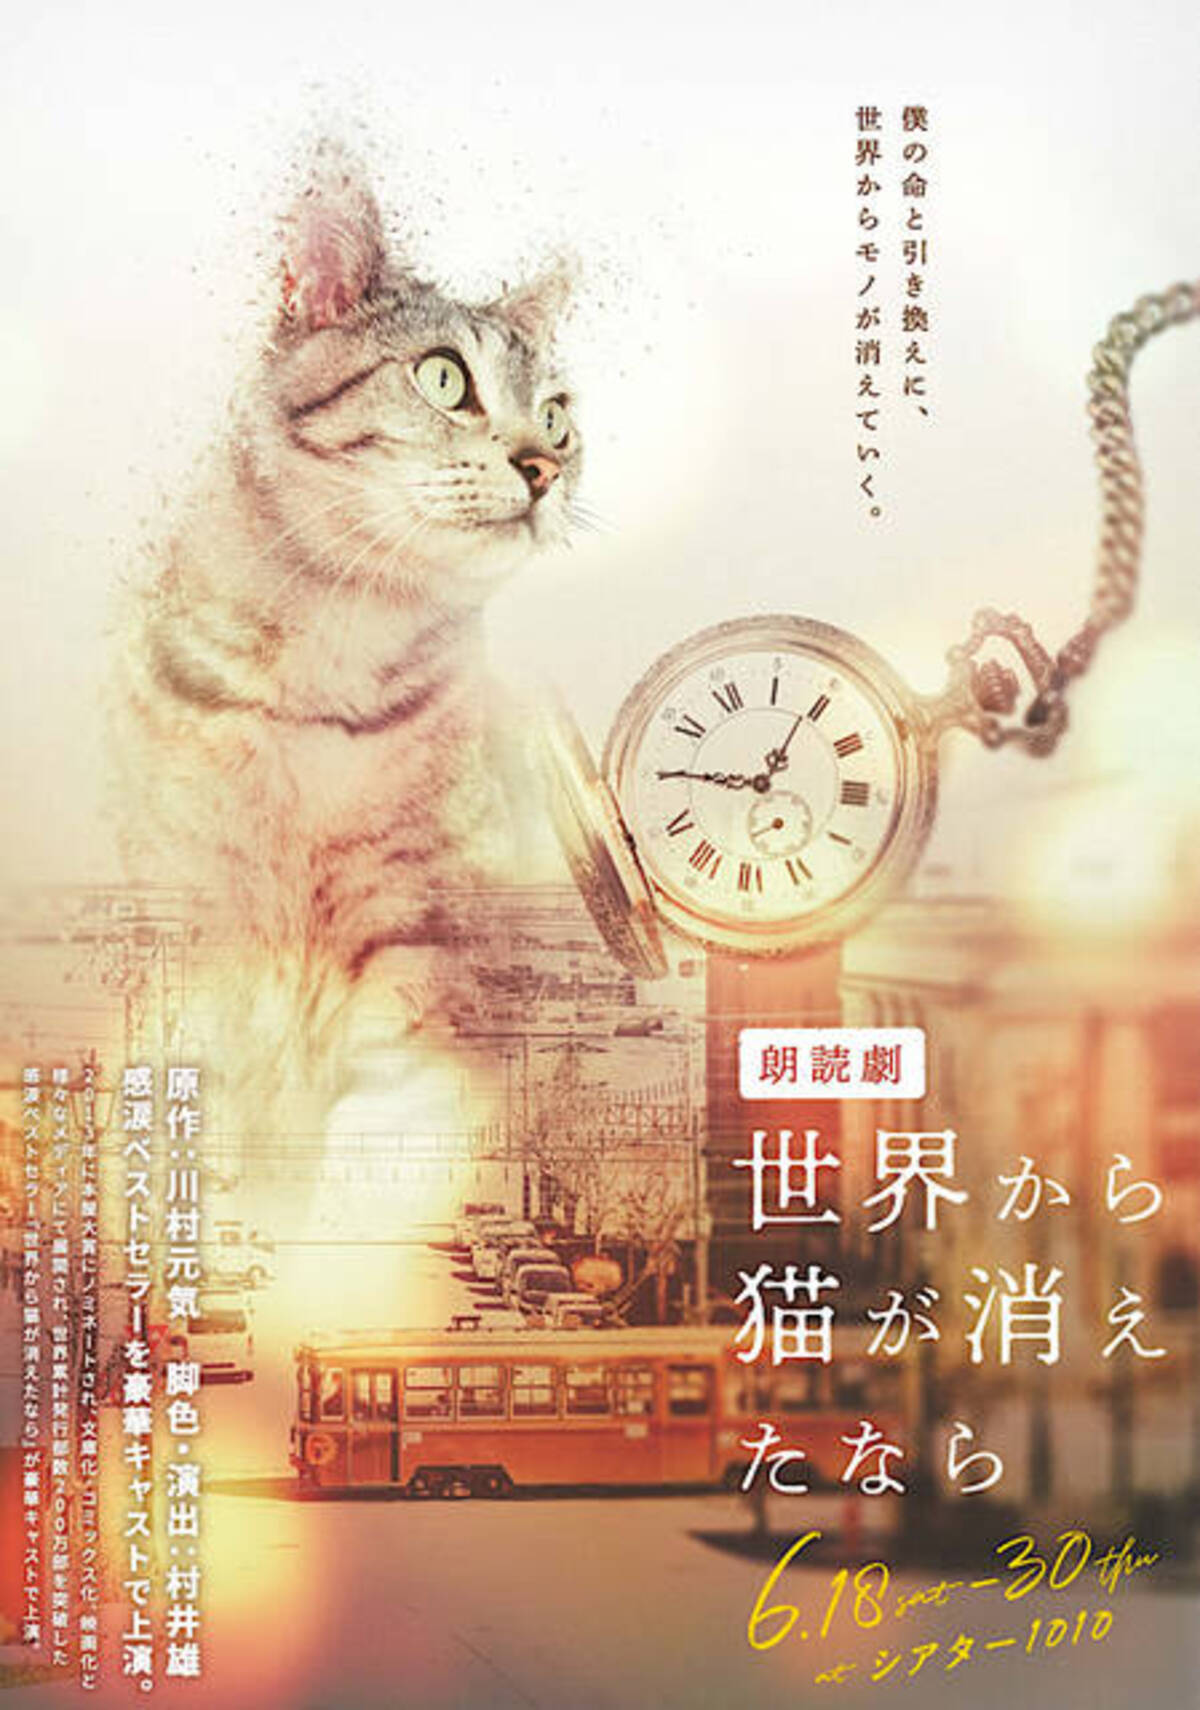 「世界から猫が消えたなら」川村元気